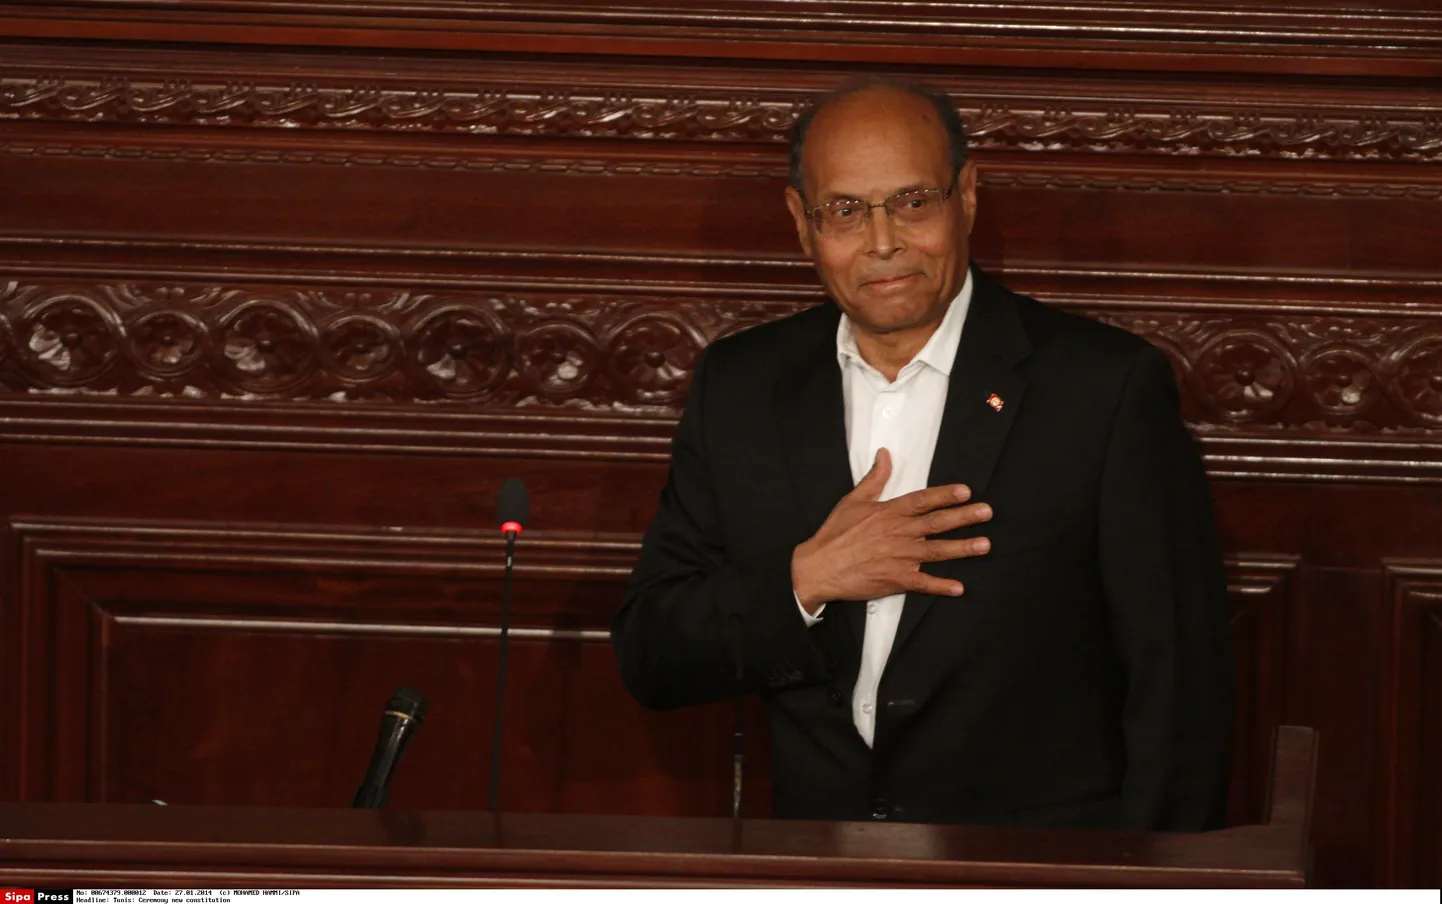 Tuneesia president Moncef Marzouki.